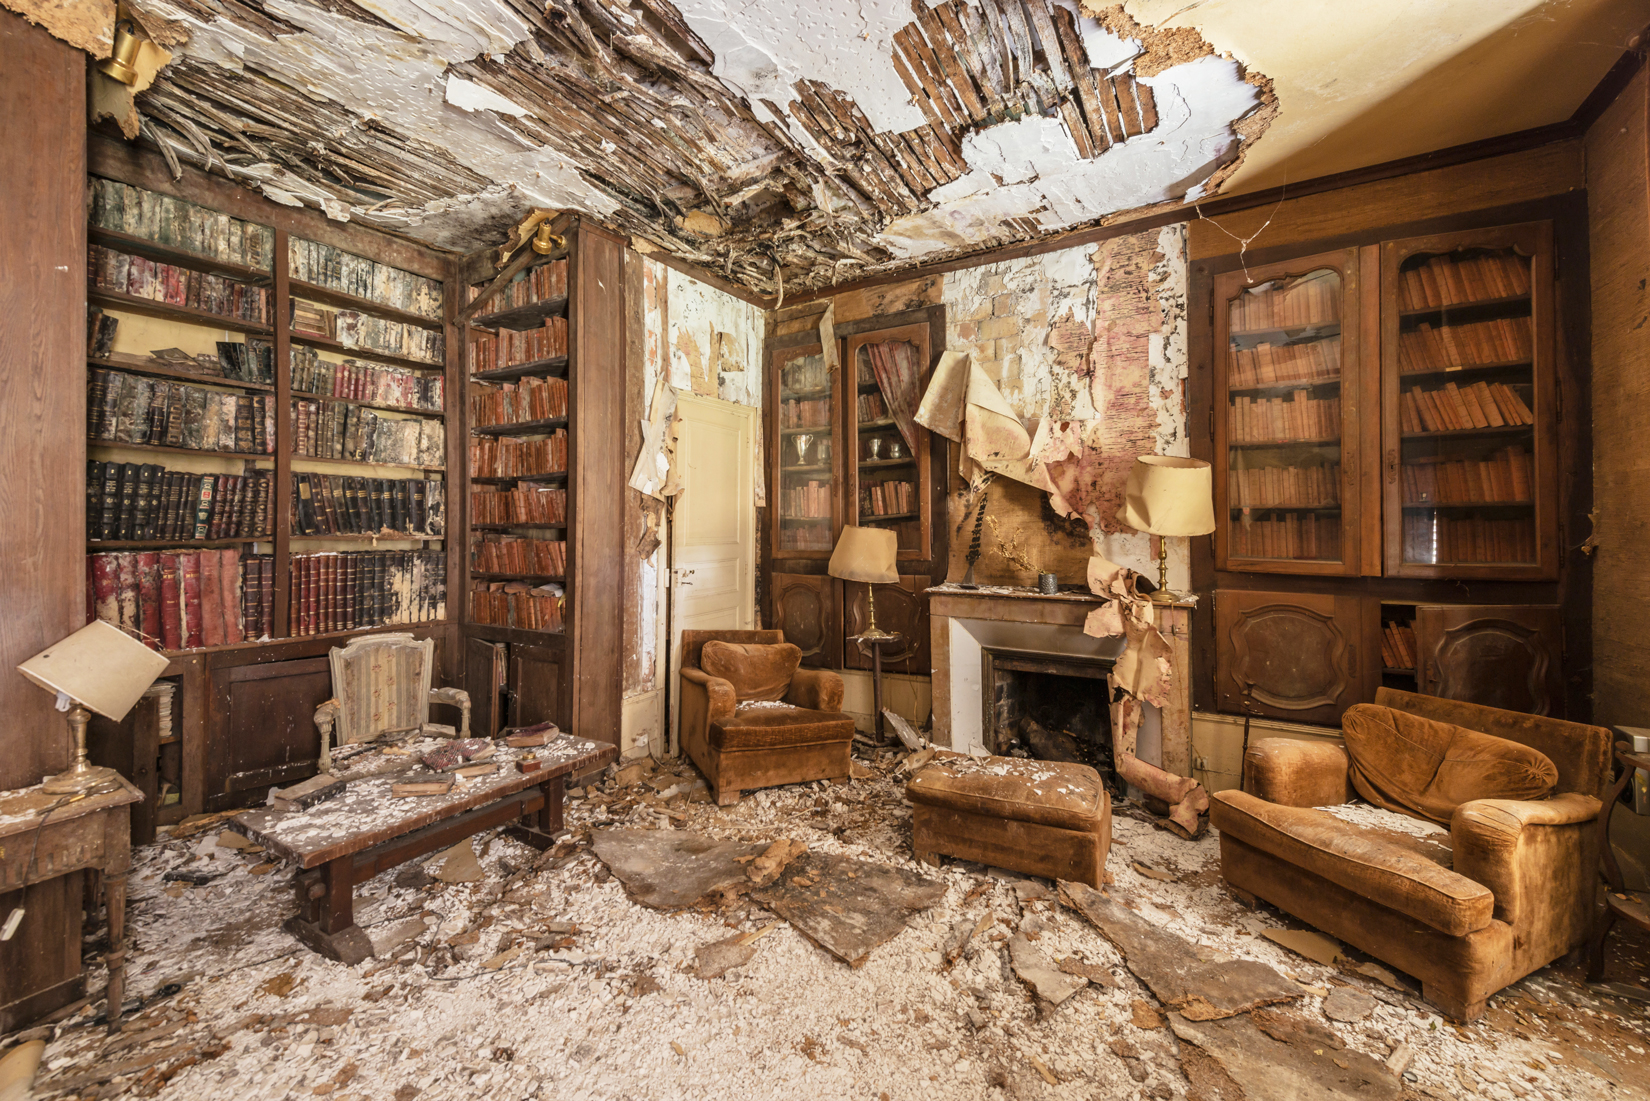 Une bibliothèque à l'abandon ©Romain Veillon